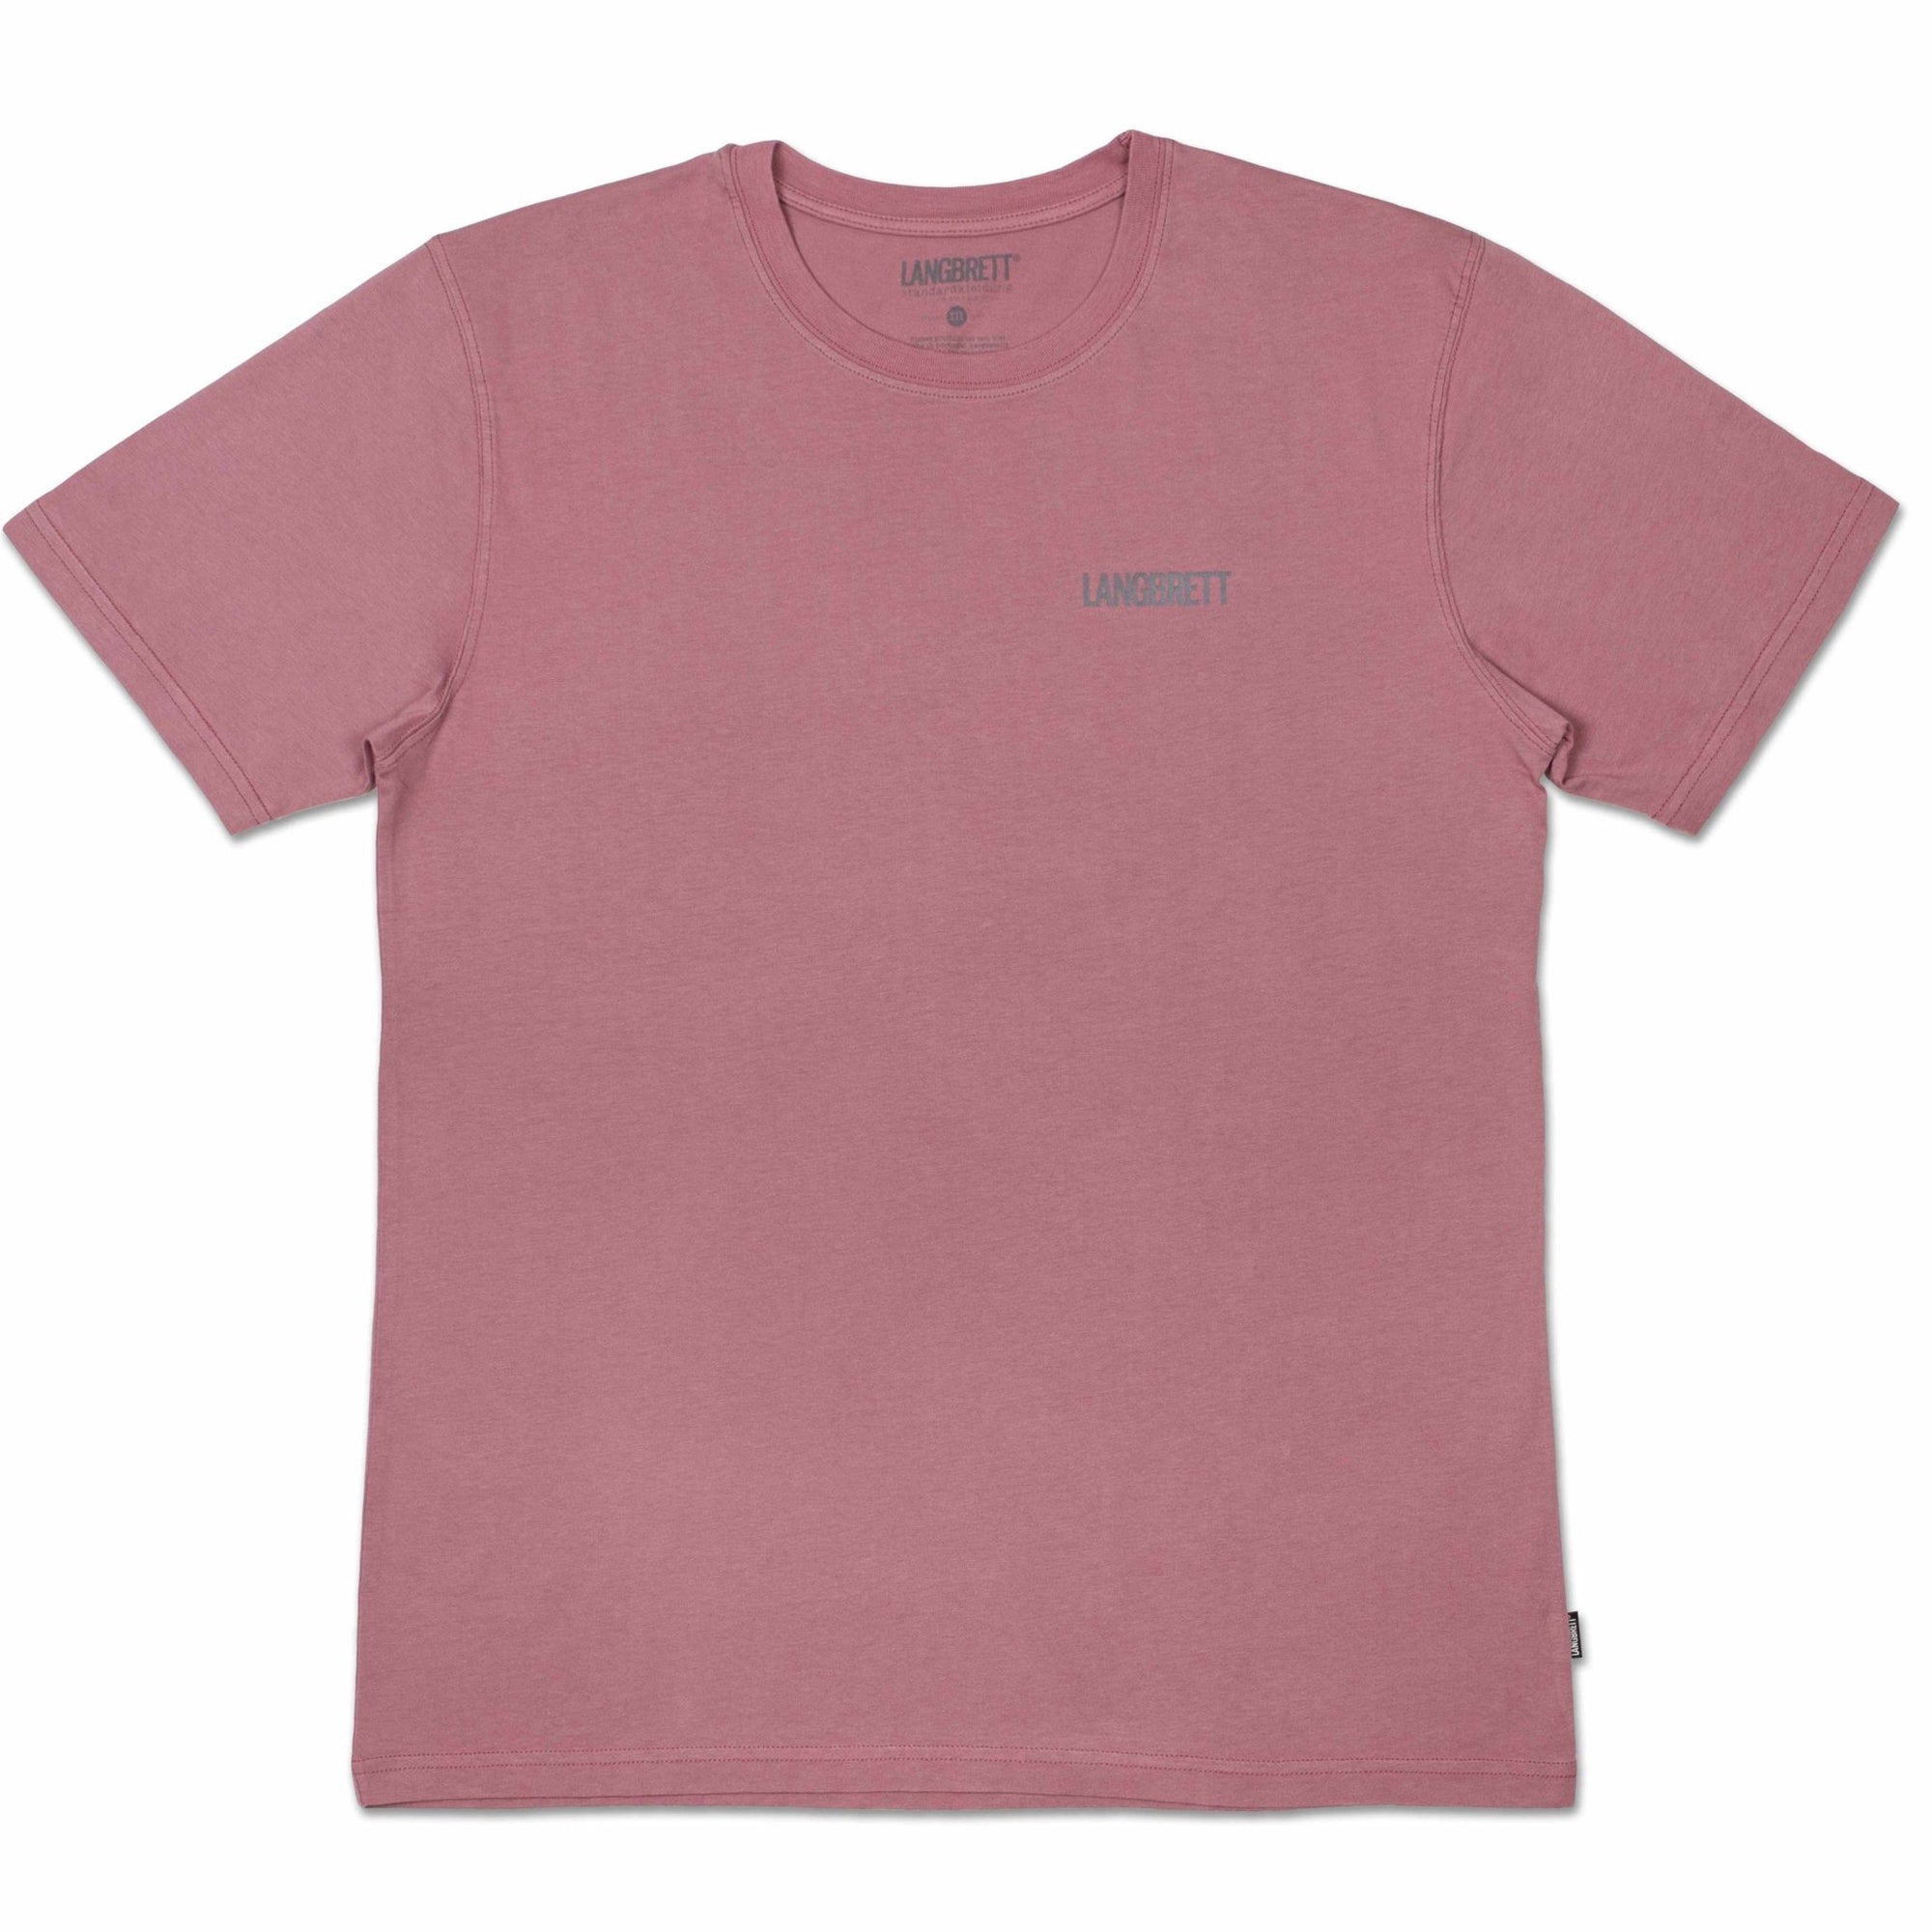 LANGBRETT t-shirt | HSD t-shirt | unisex